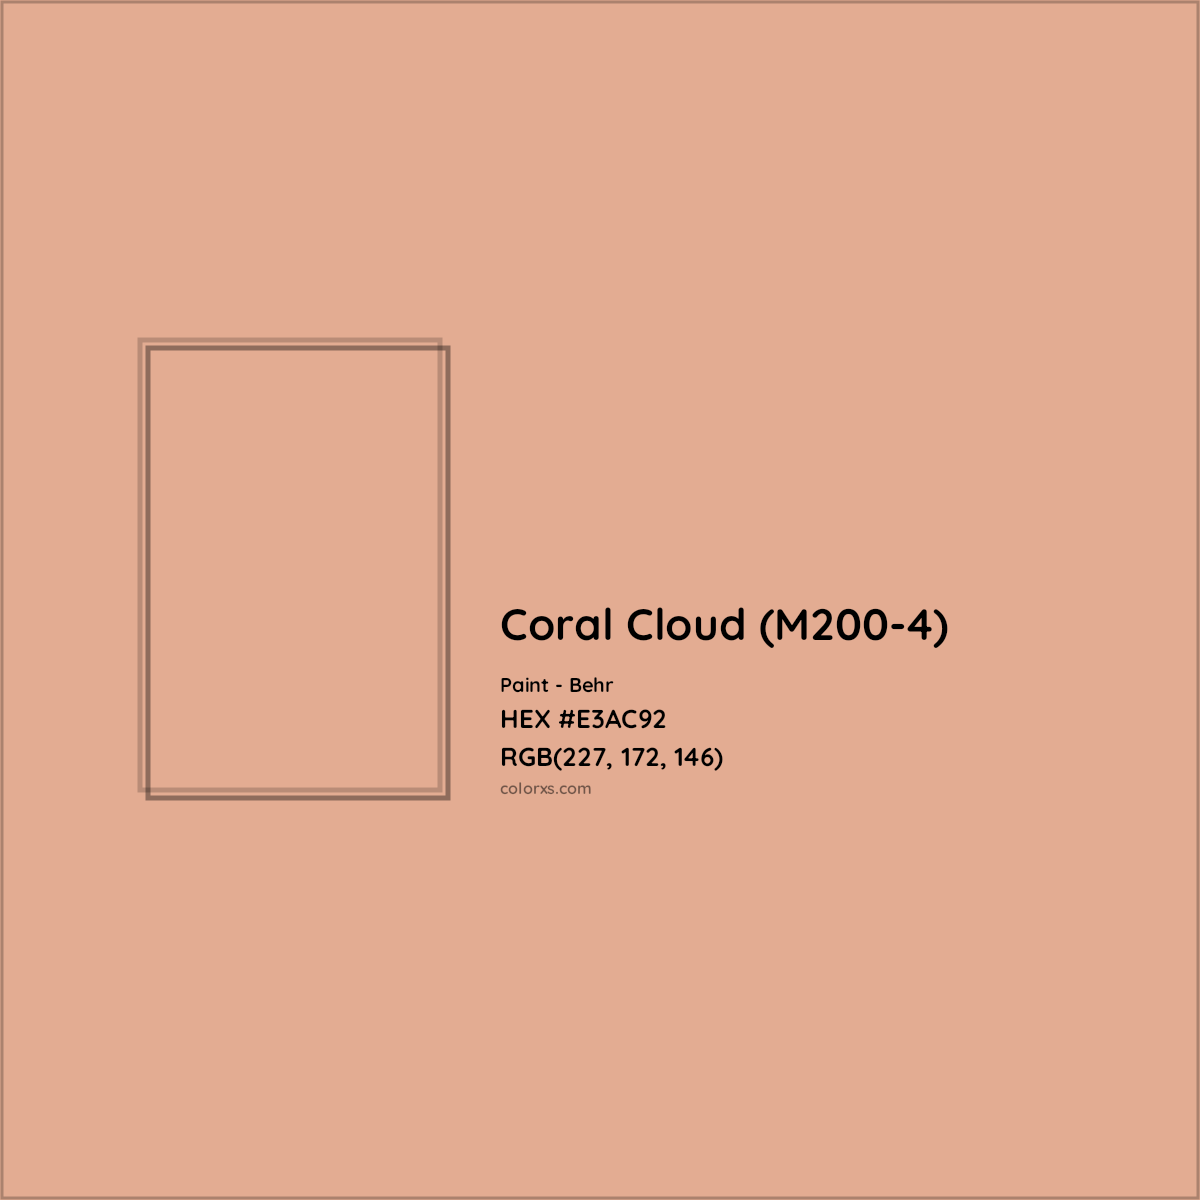 HEX #E3AC92 Coral Cloud (M200-4) Paint Behr - Color Code